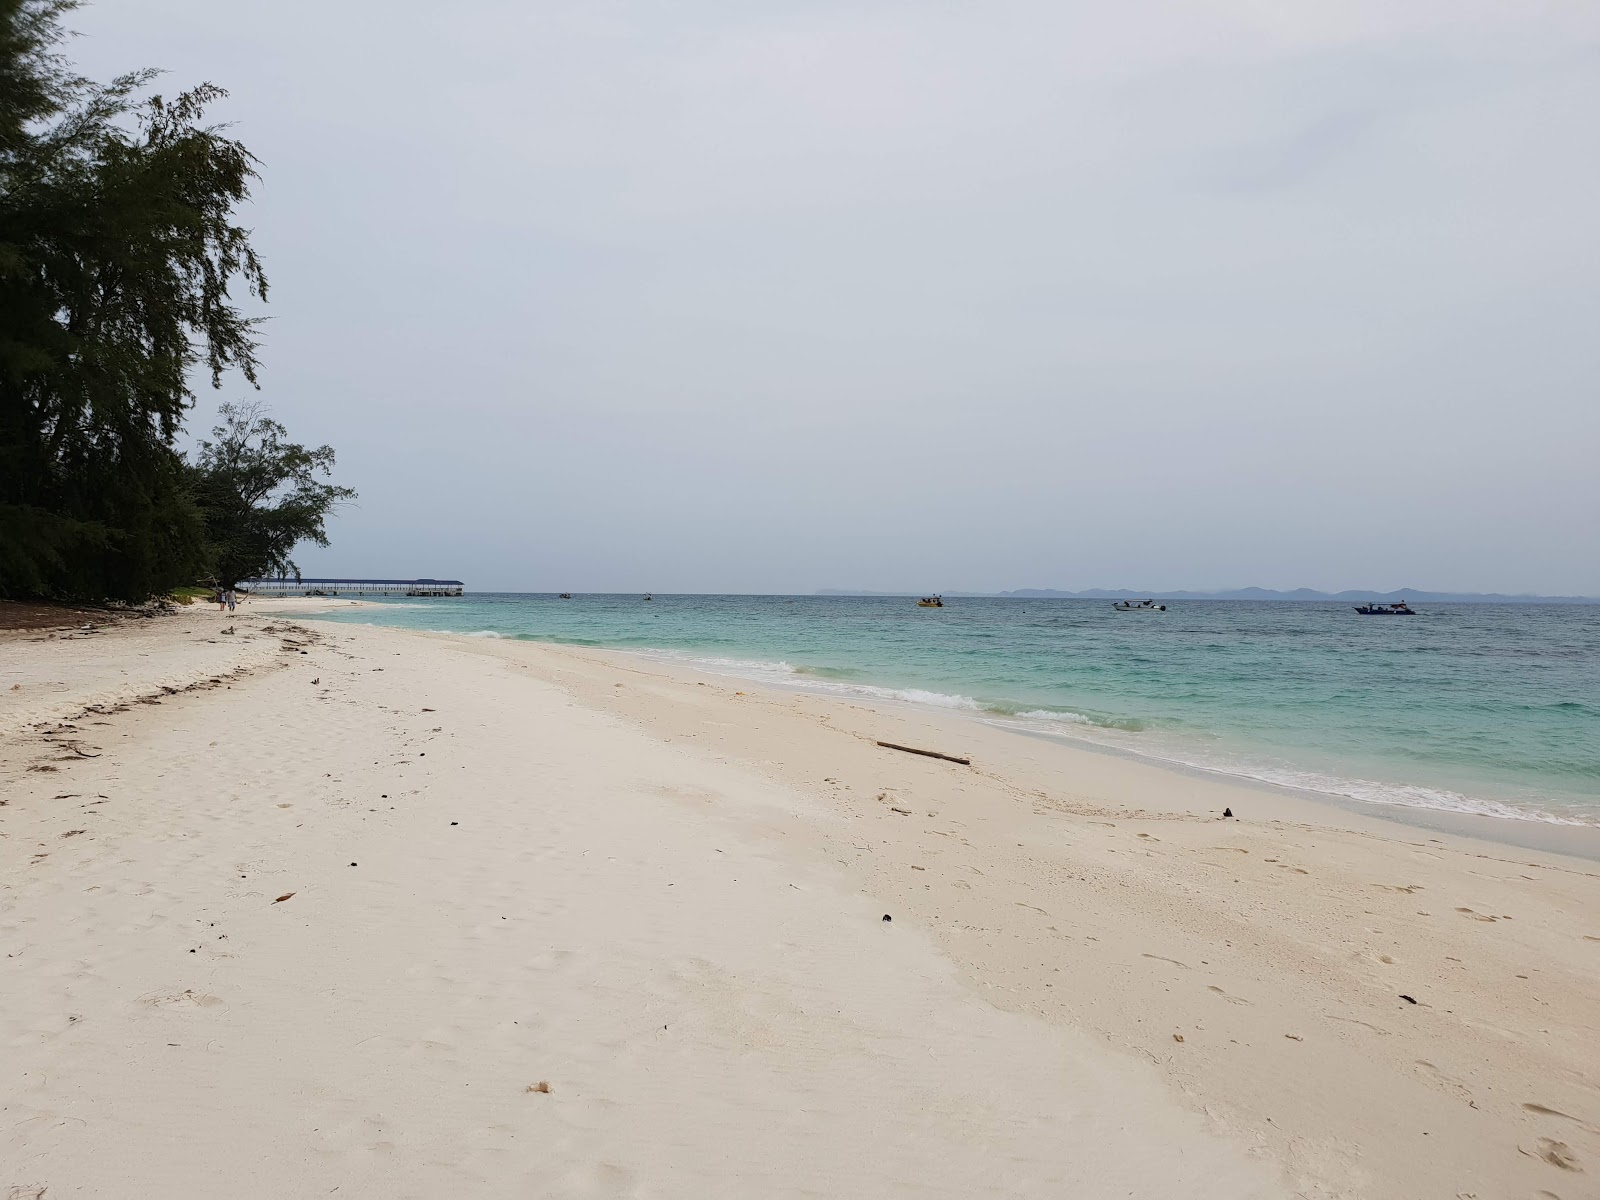 Fotografie cu Aseania Beach Resort cu nivelul de curățenie înalt